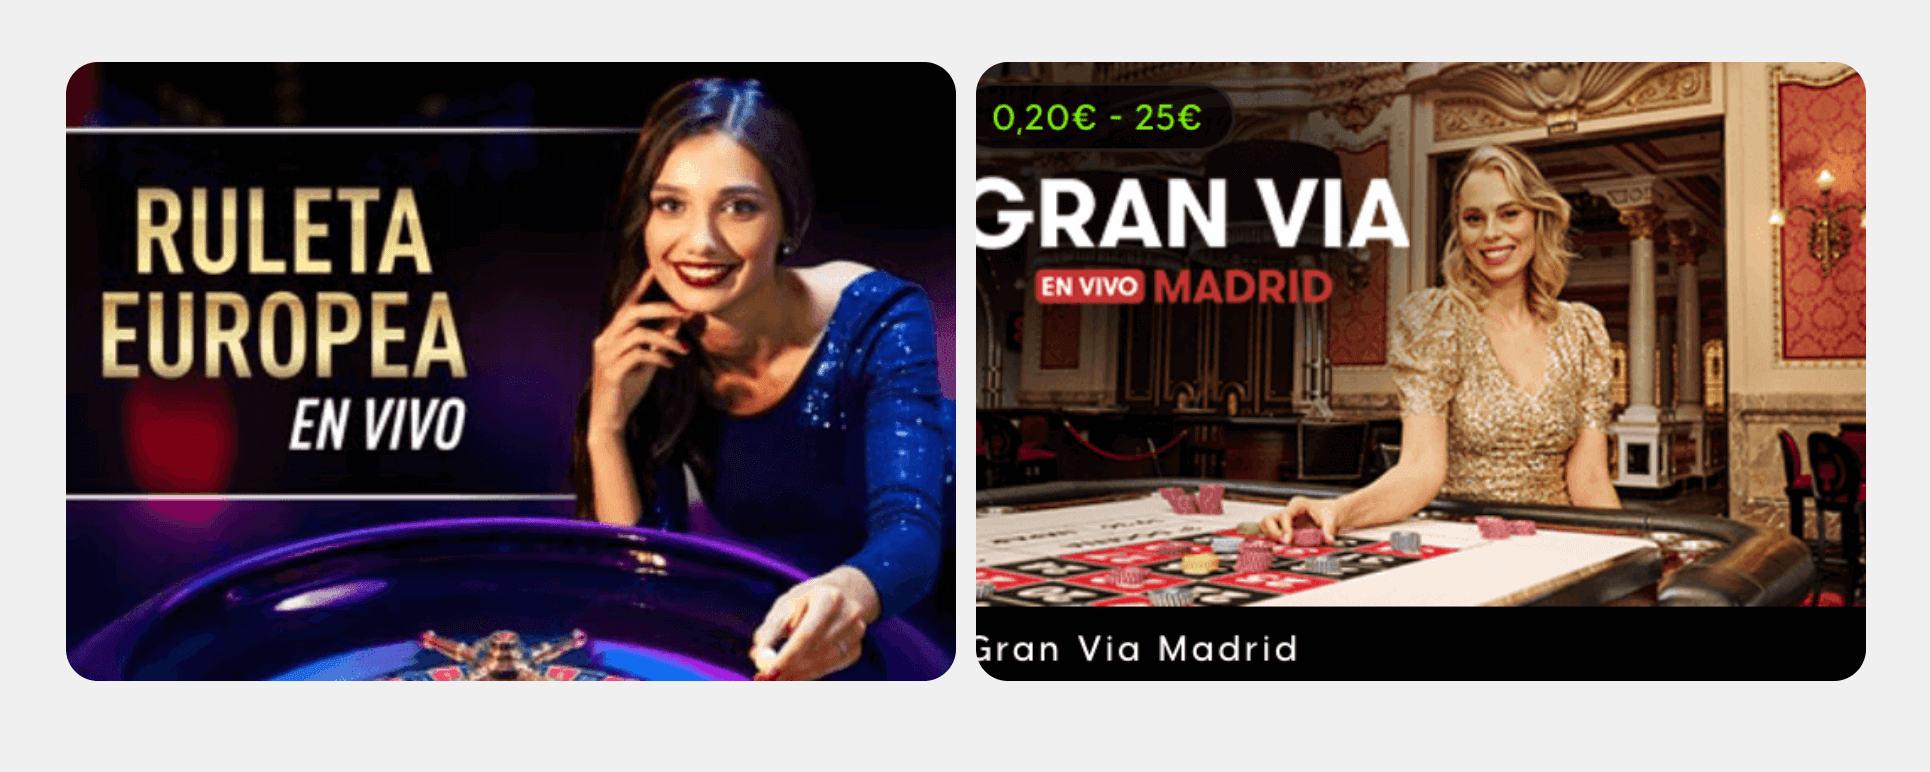 El único juego de casino en vivo disponible en España seguirá siendo la ruleta